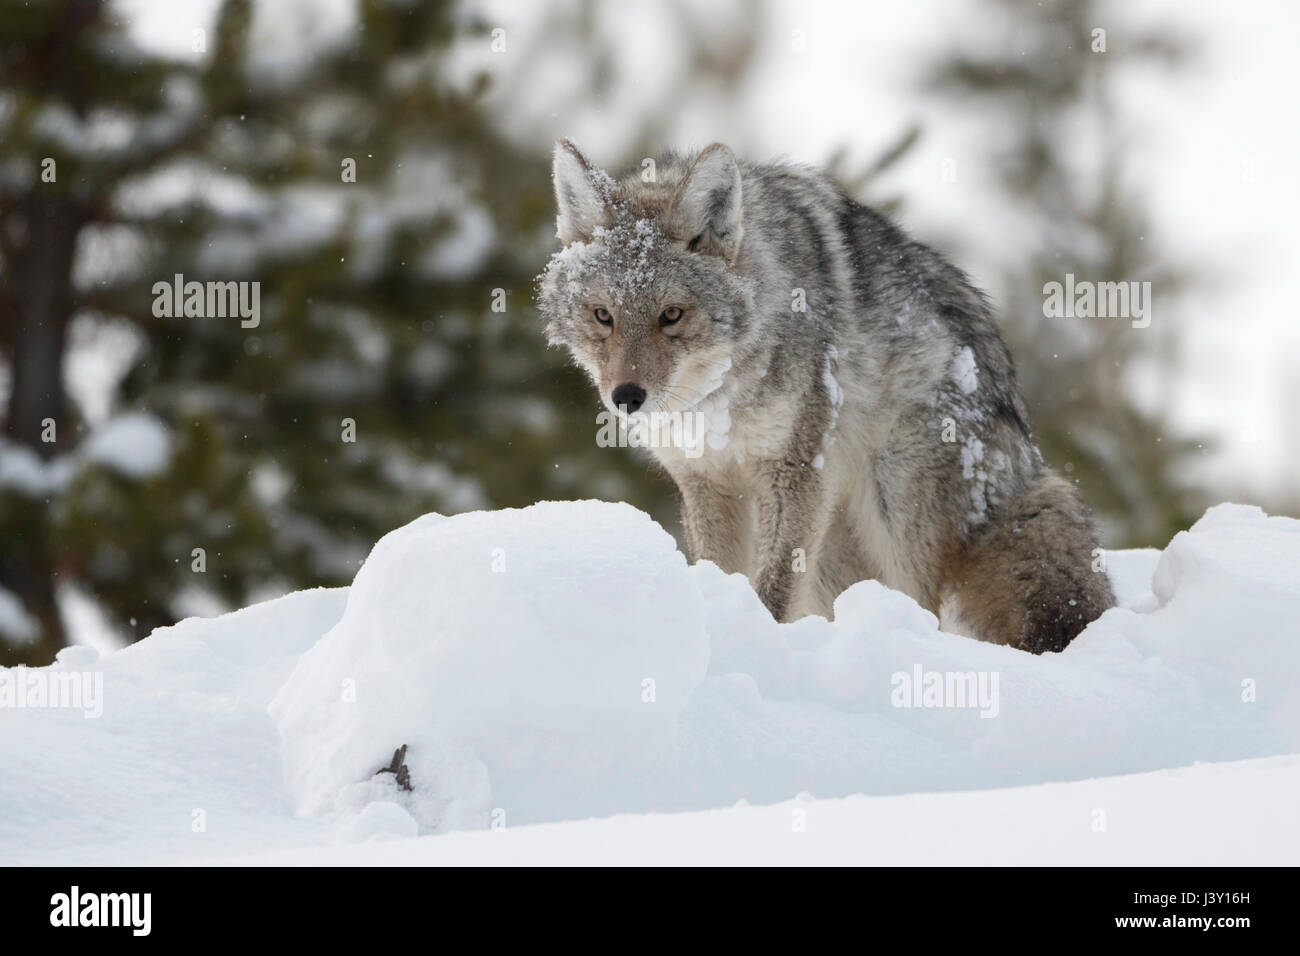 Coyote ( Canis latrans ) in inverno la neve profonda, seduto o in piedi, con claggy neve e ghiaccio nella sua pelliccia, sembra divertente, Yellowstone NP, Wyoming negli Stati Uniti. Foto Stock